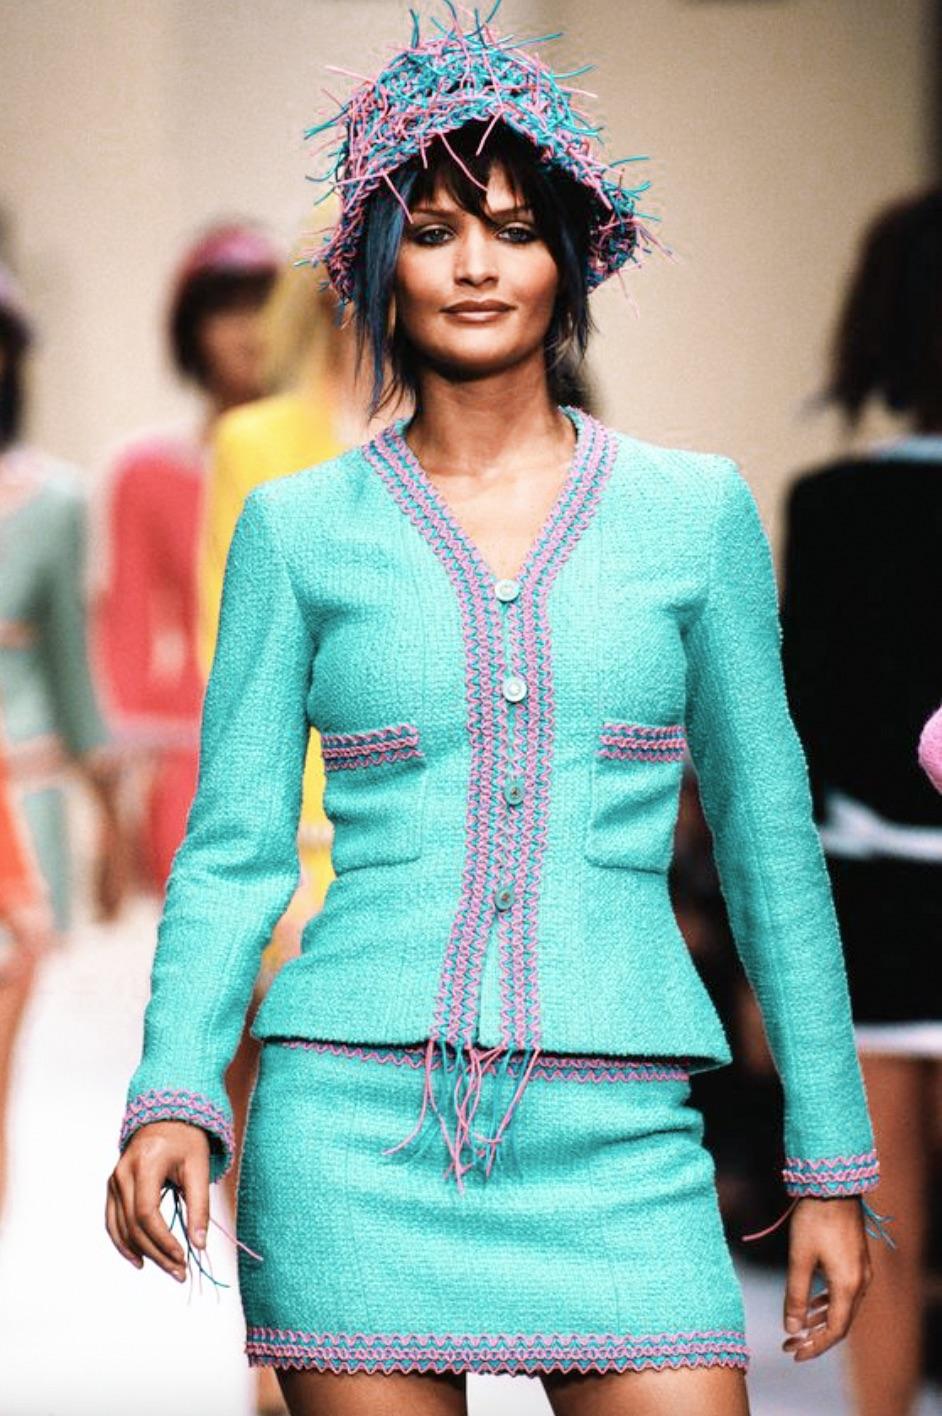 Voici une pièce rare et très recherchée de la collection emblématique printemps/été 1994 de Chanel : l'époustouflant tailleur turquoise 